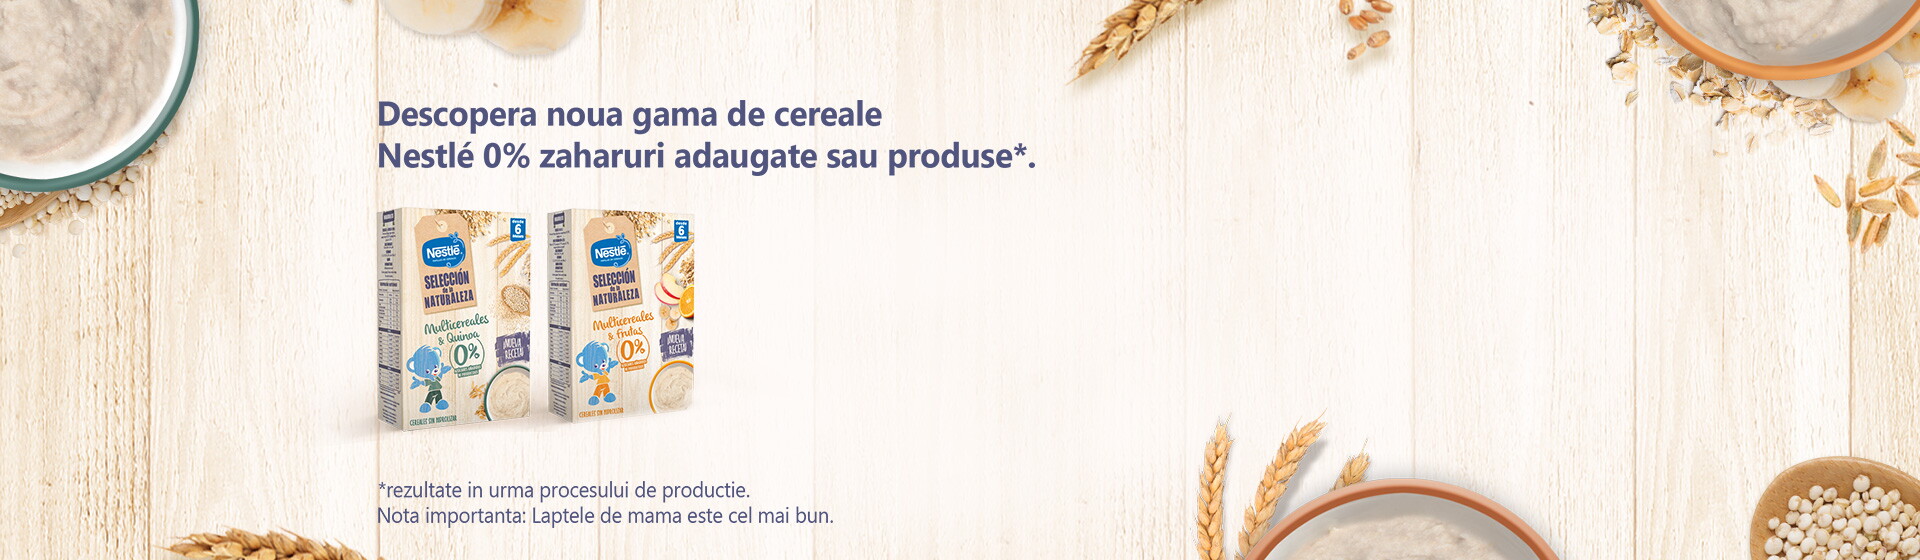 Cereale Nestlé 0% zaharuri adaugate